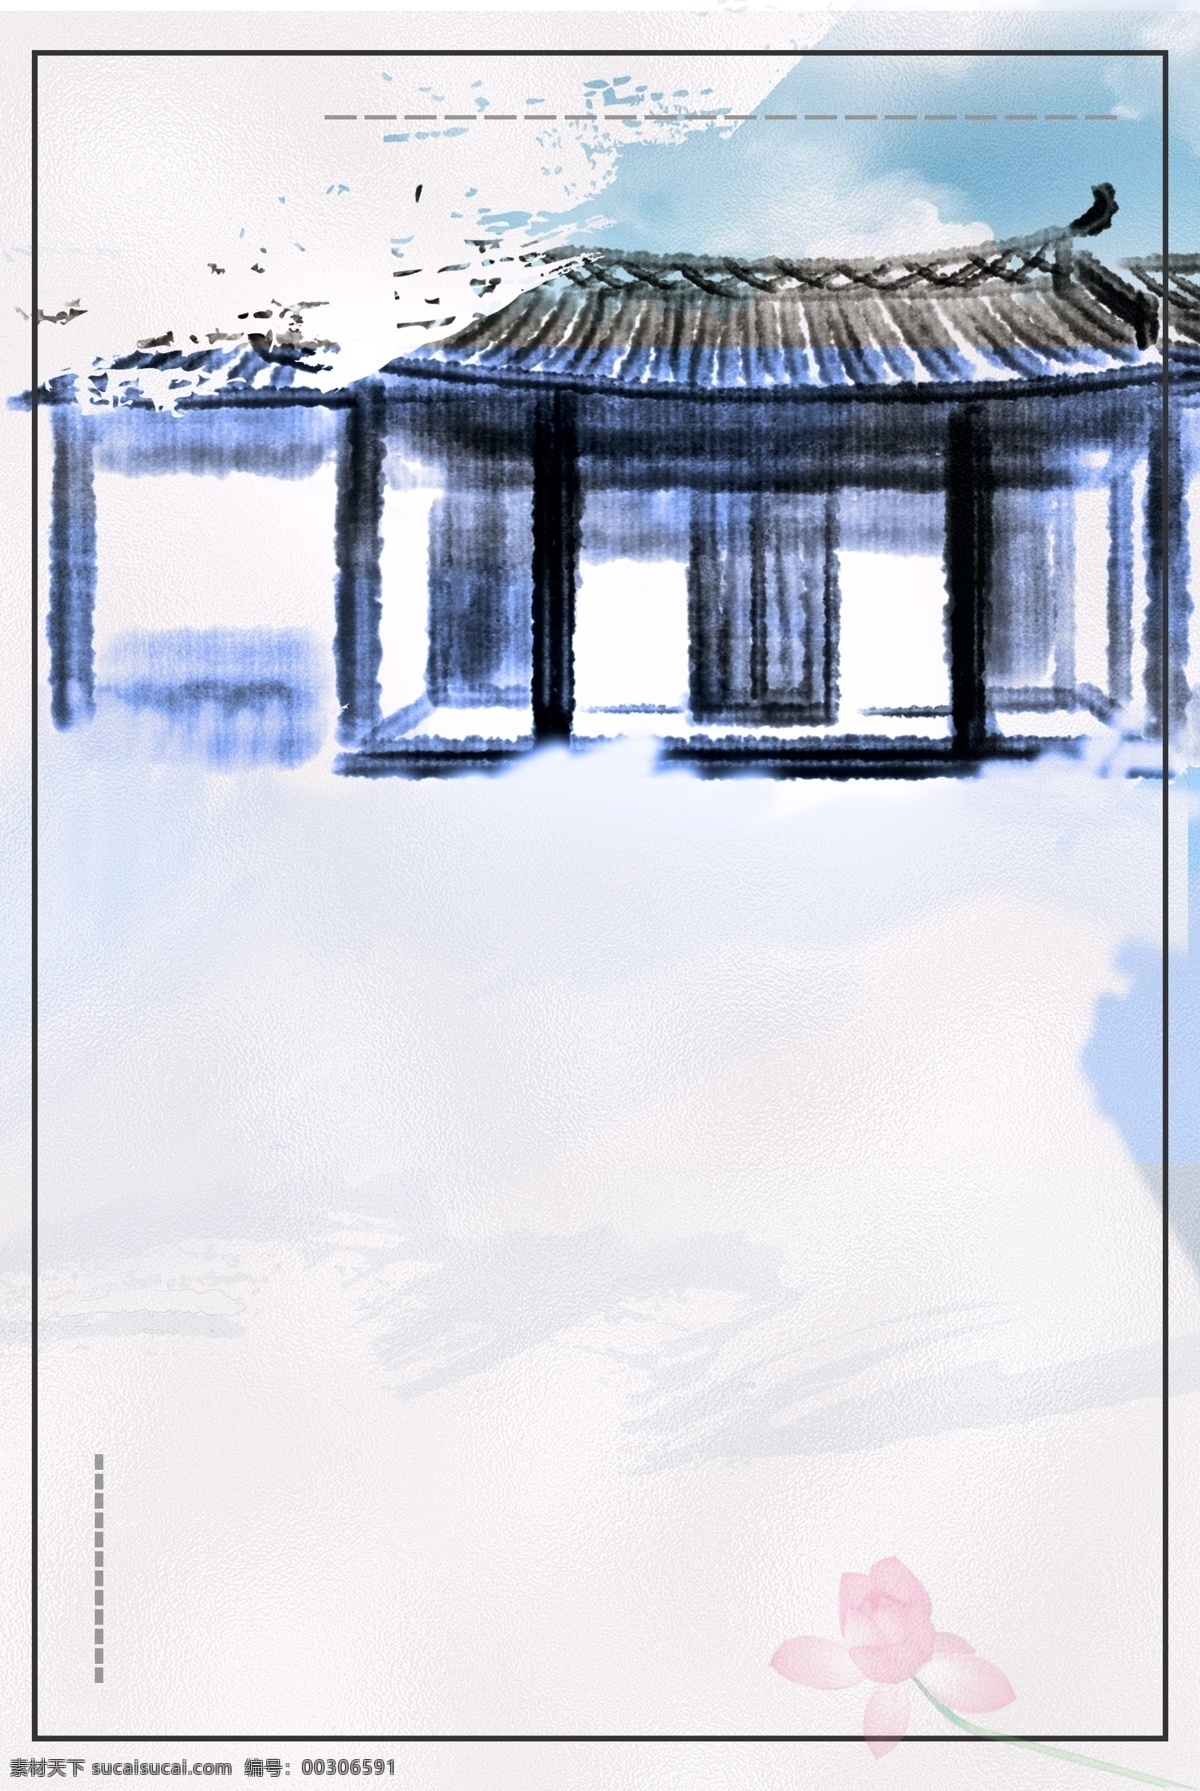 古典 中国 风 房产 背景 古风 高端别墅 房地产 高楼 文艺 手绘质感 意境 中式复古 庭院 四合院